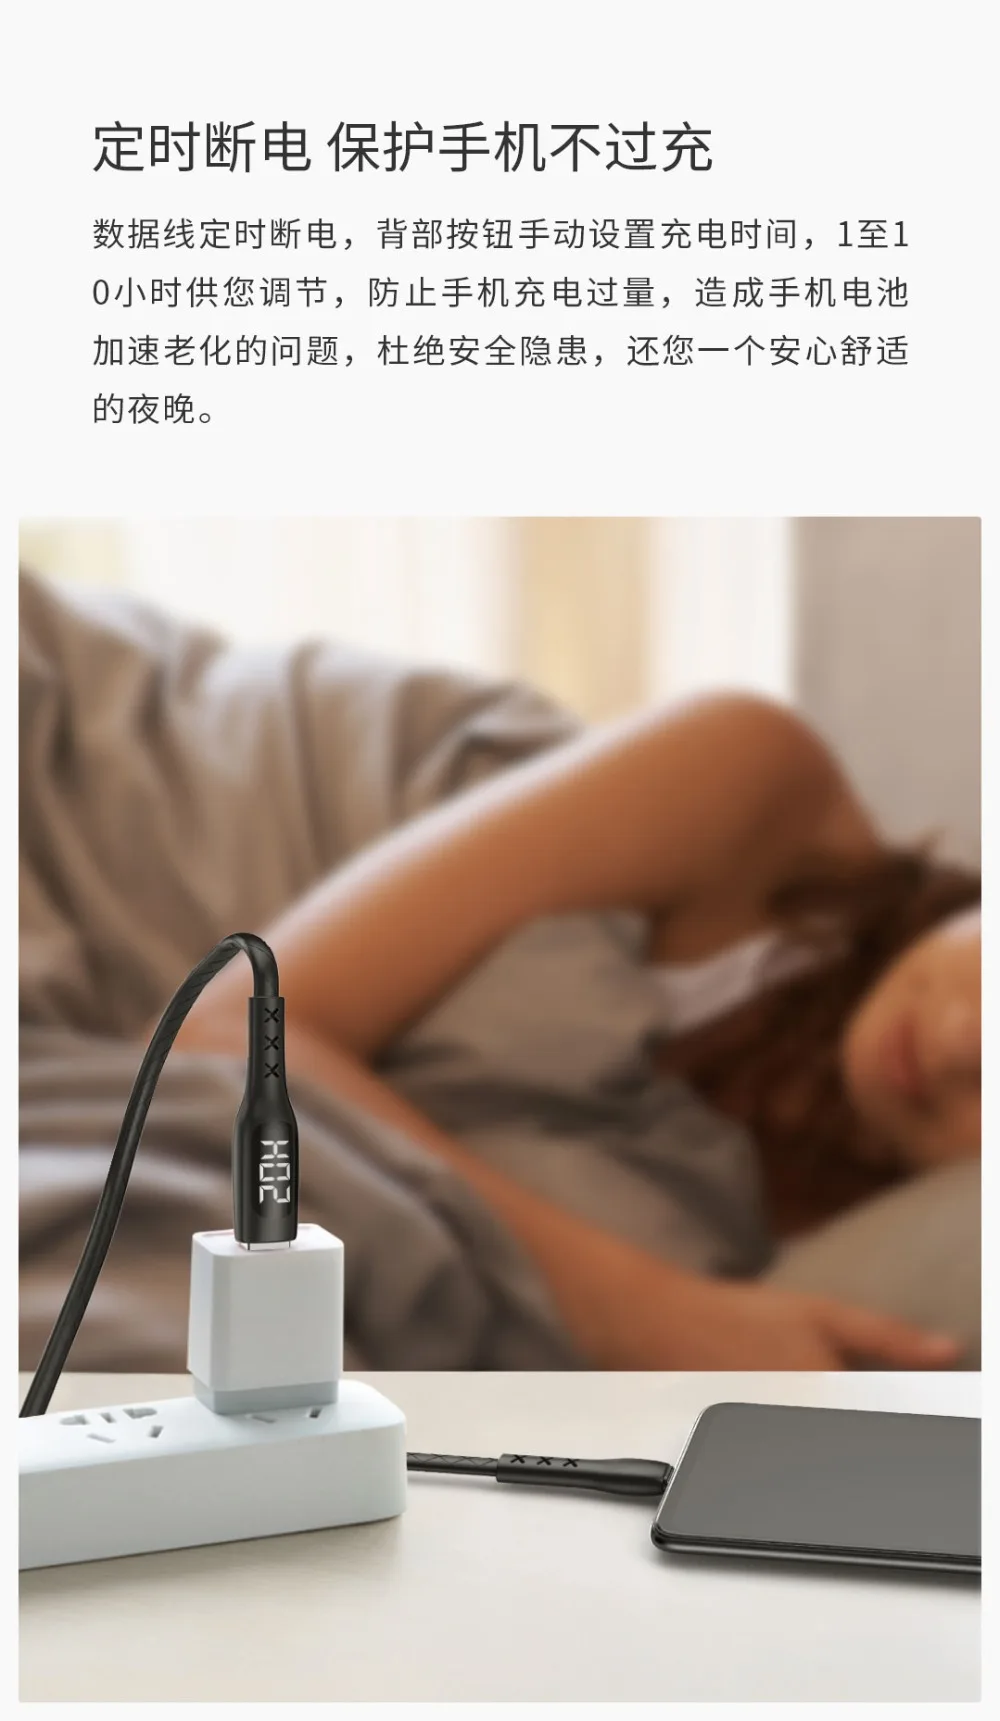 Xiaomi Mijia WSKEN USB 2,0-type-C кабель зарядного устройства экран Отображение тока Напряжение синхронизации выключение питания анти-обмотка тип-c дата-код